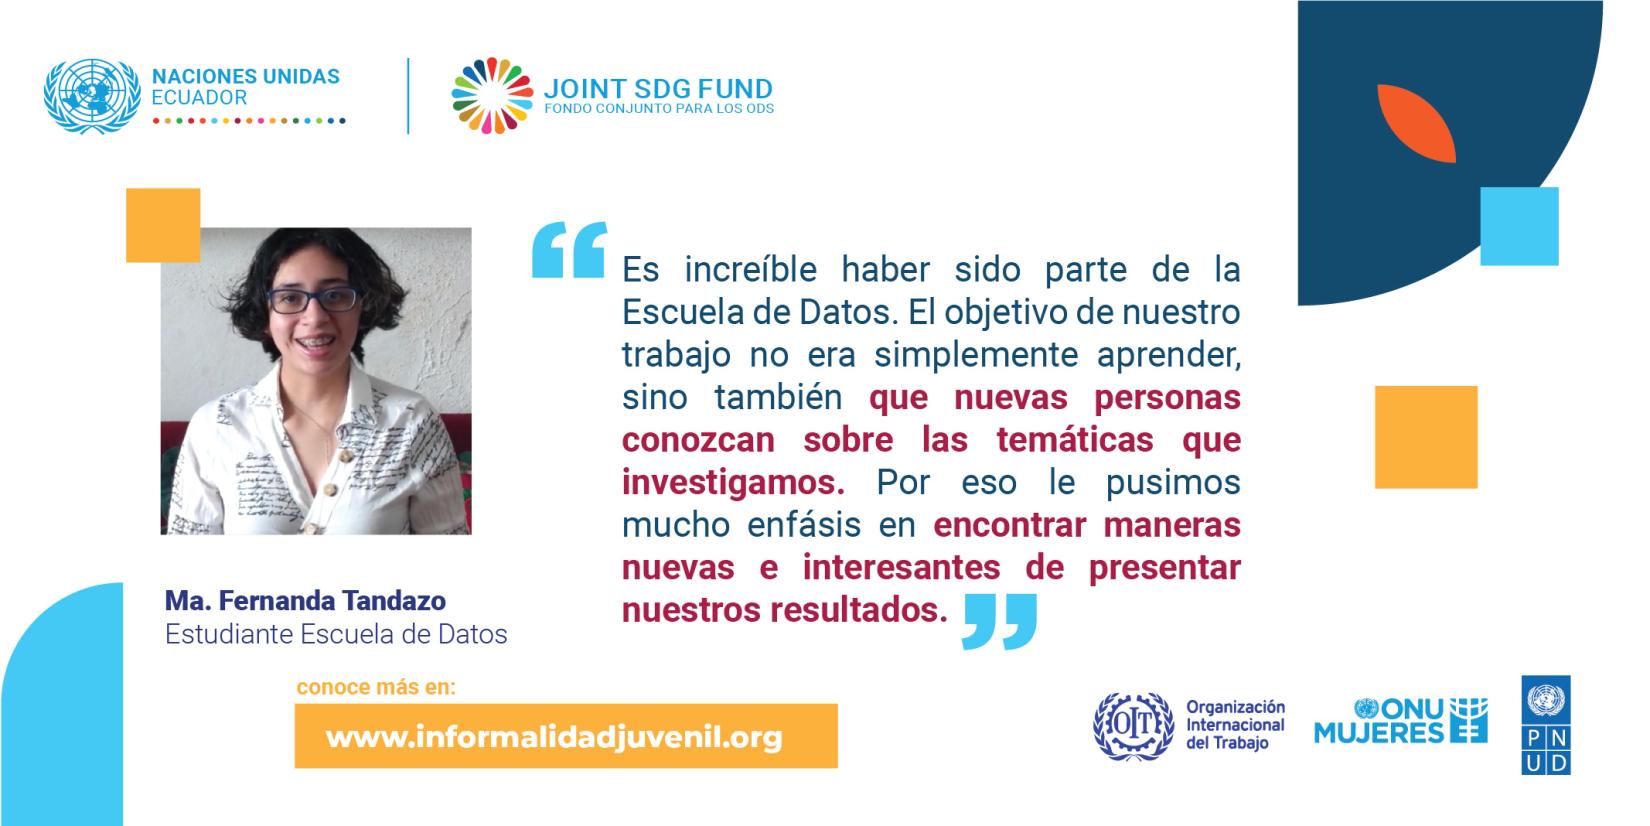 Testimonio de María Fernanda Tandazo - Lanzamiento portal programa SDG Fund